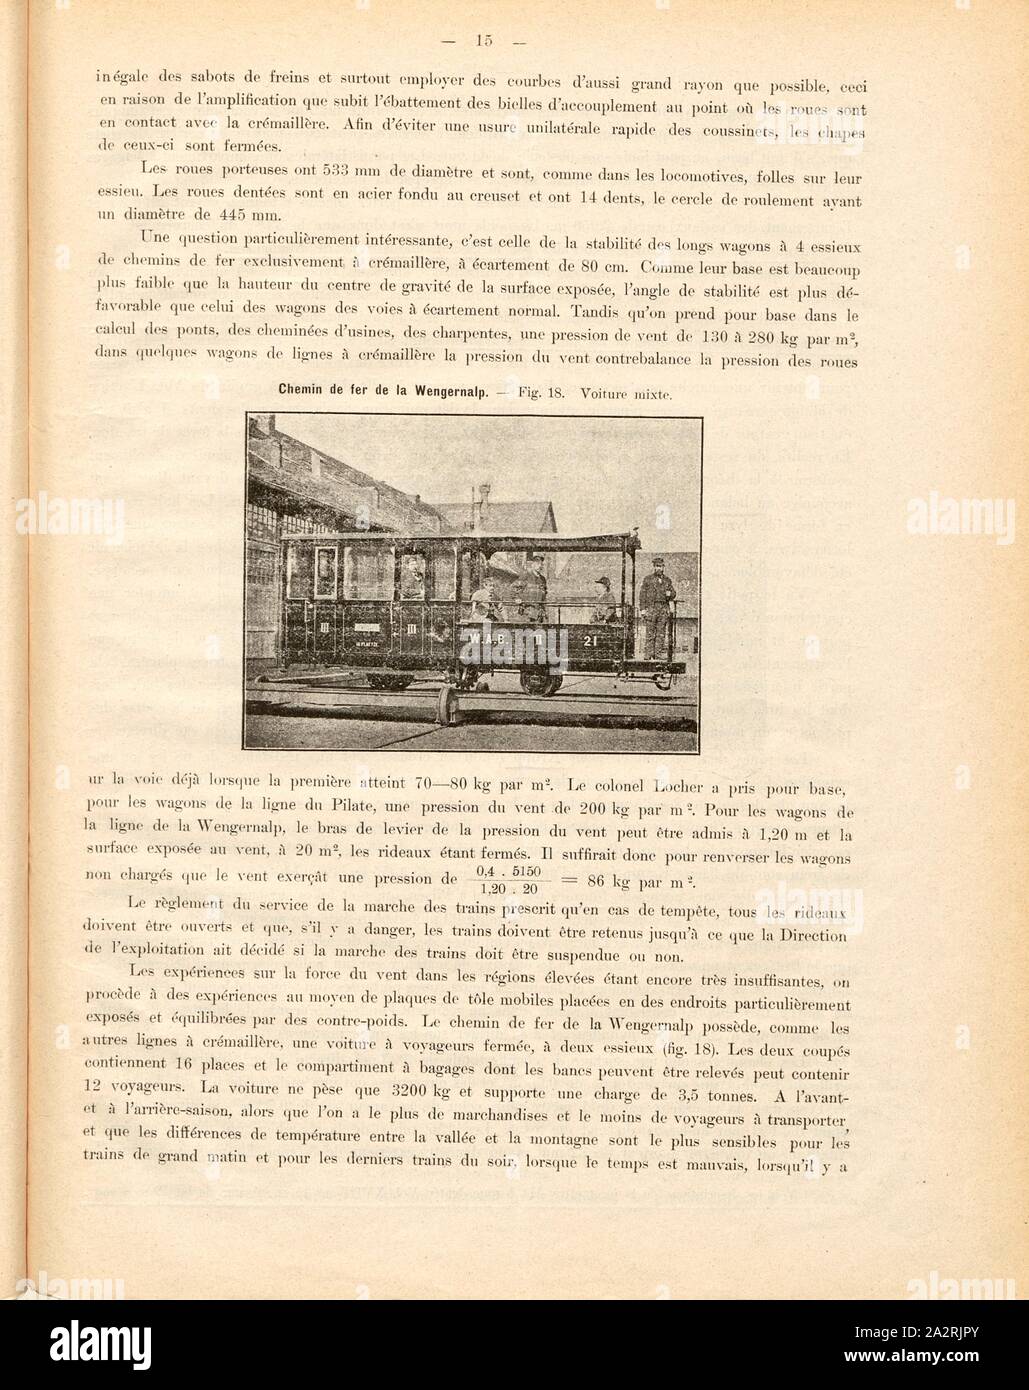 Auto misti, vagone di miste di seconda e di terza classe, Fig. 18, p. 15, 1893, Emil Strub: Le chemin de fer de la Wengernalp. [S.l.m.]: [s.n.], 1893 Foto Stock